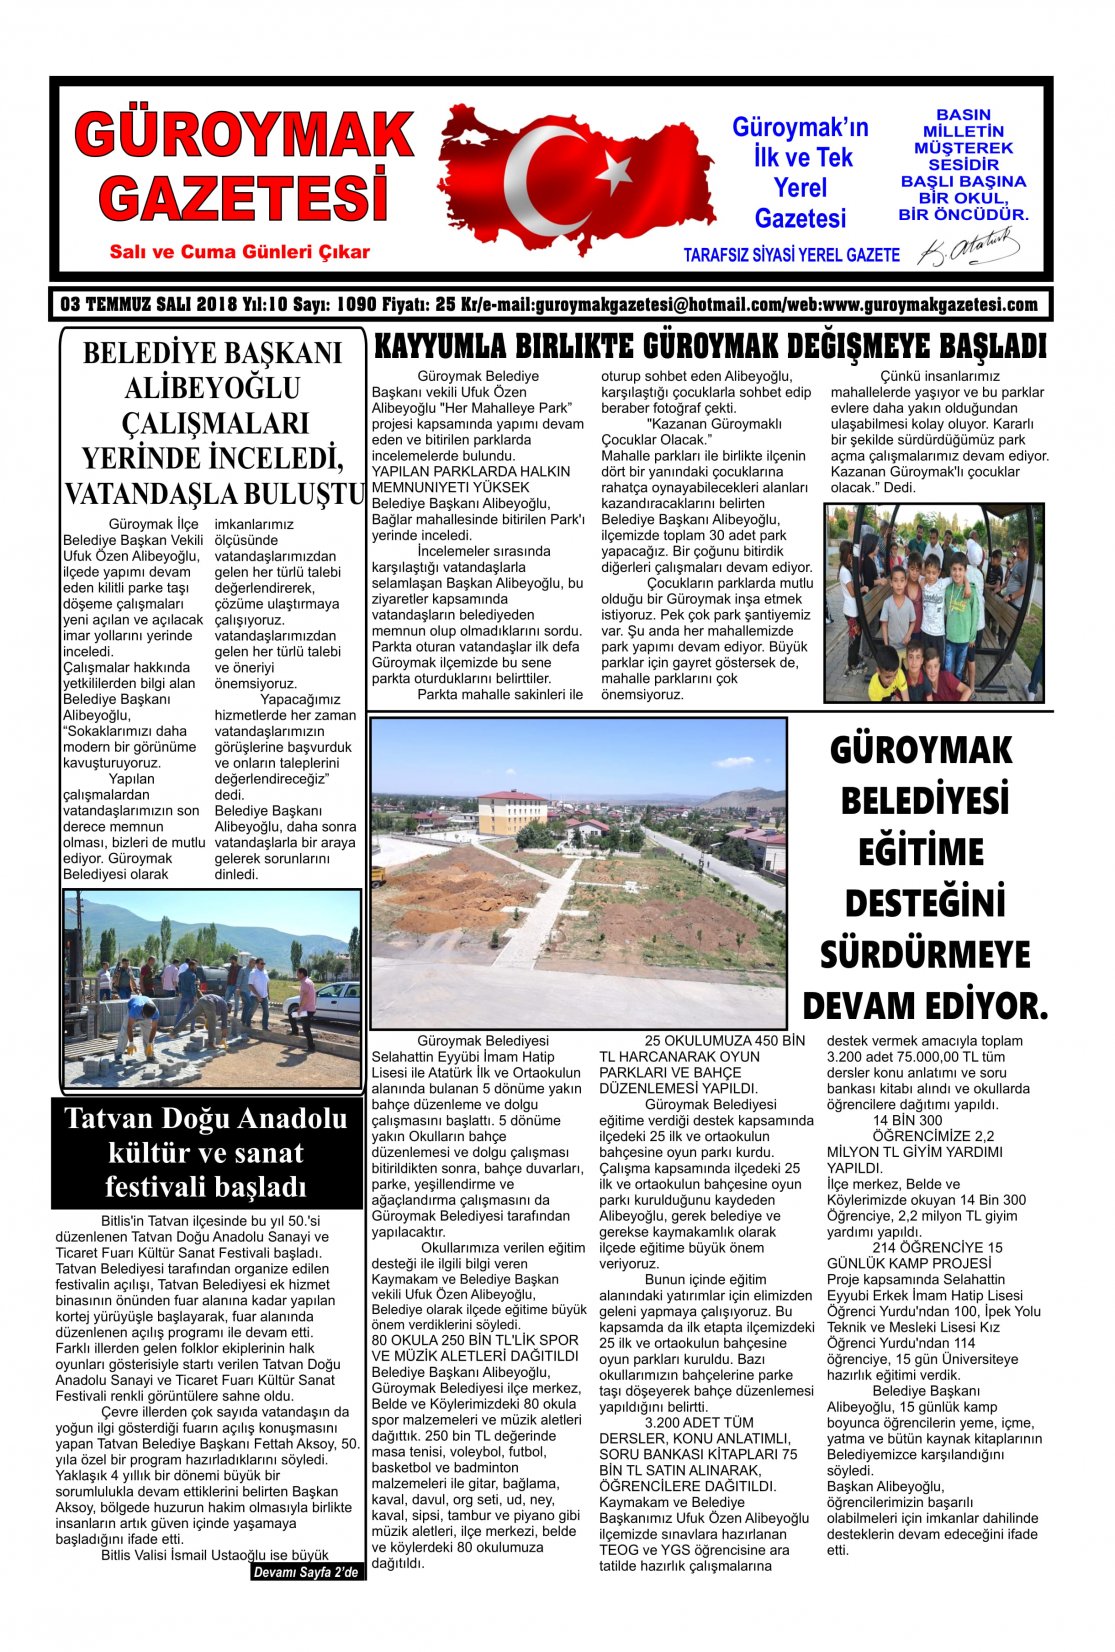 Güroymak Gazetesi 1 (2)-1.jpg Sayılı Gazete Küpürü